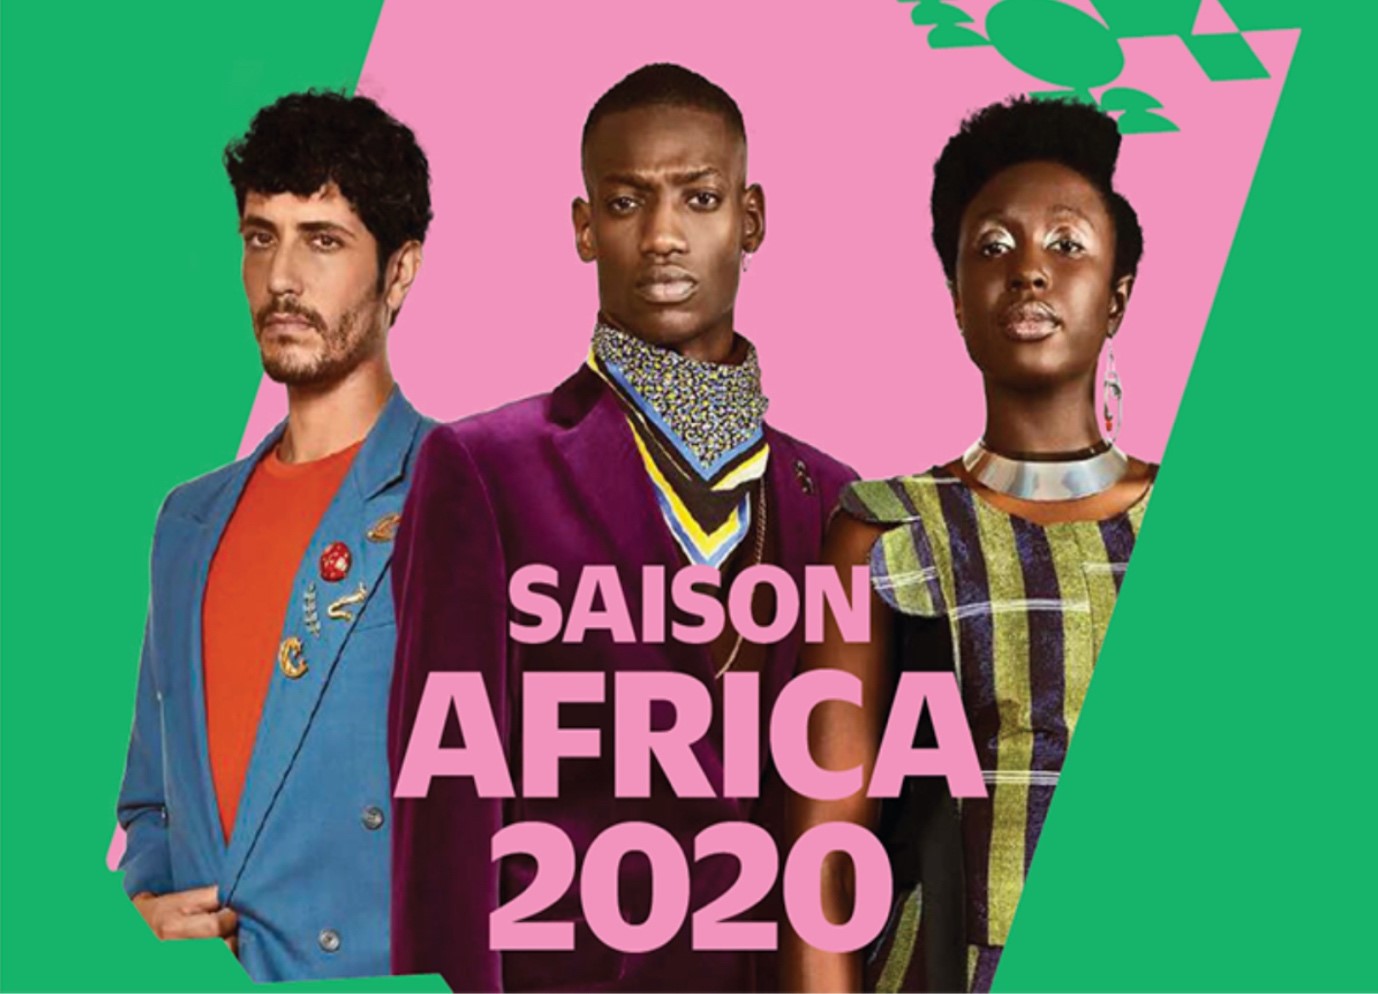 AFRICA 2020